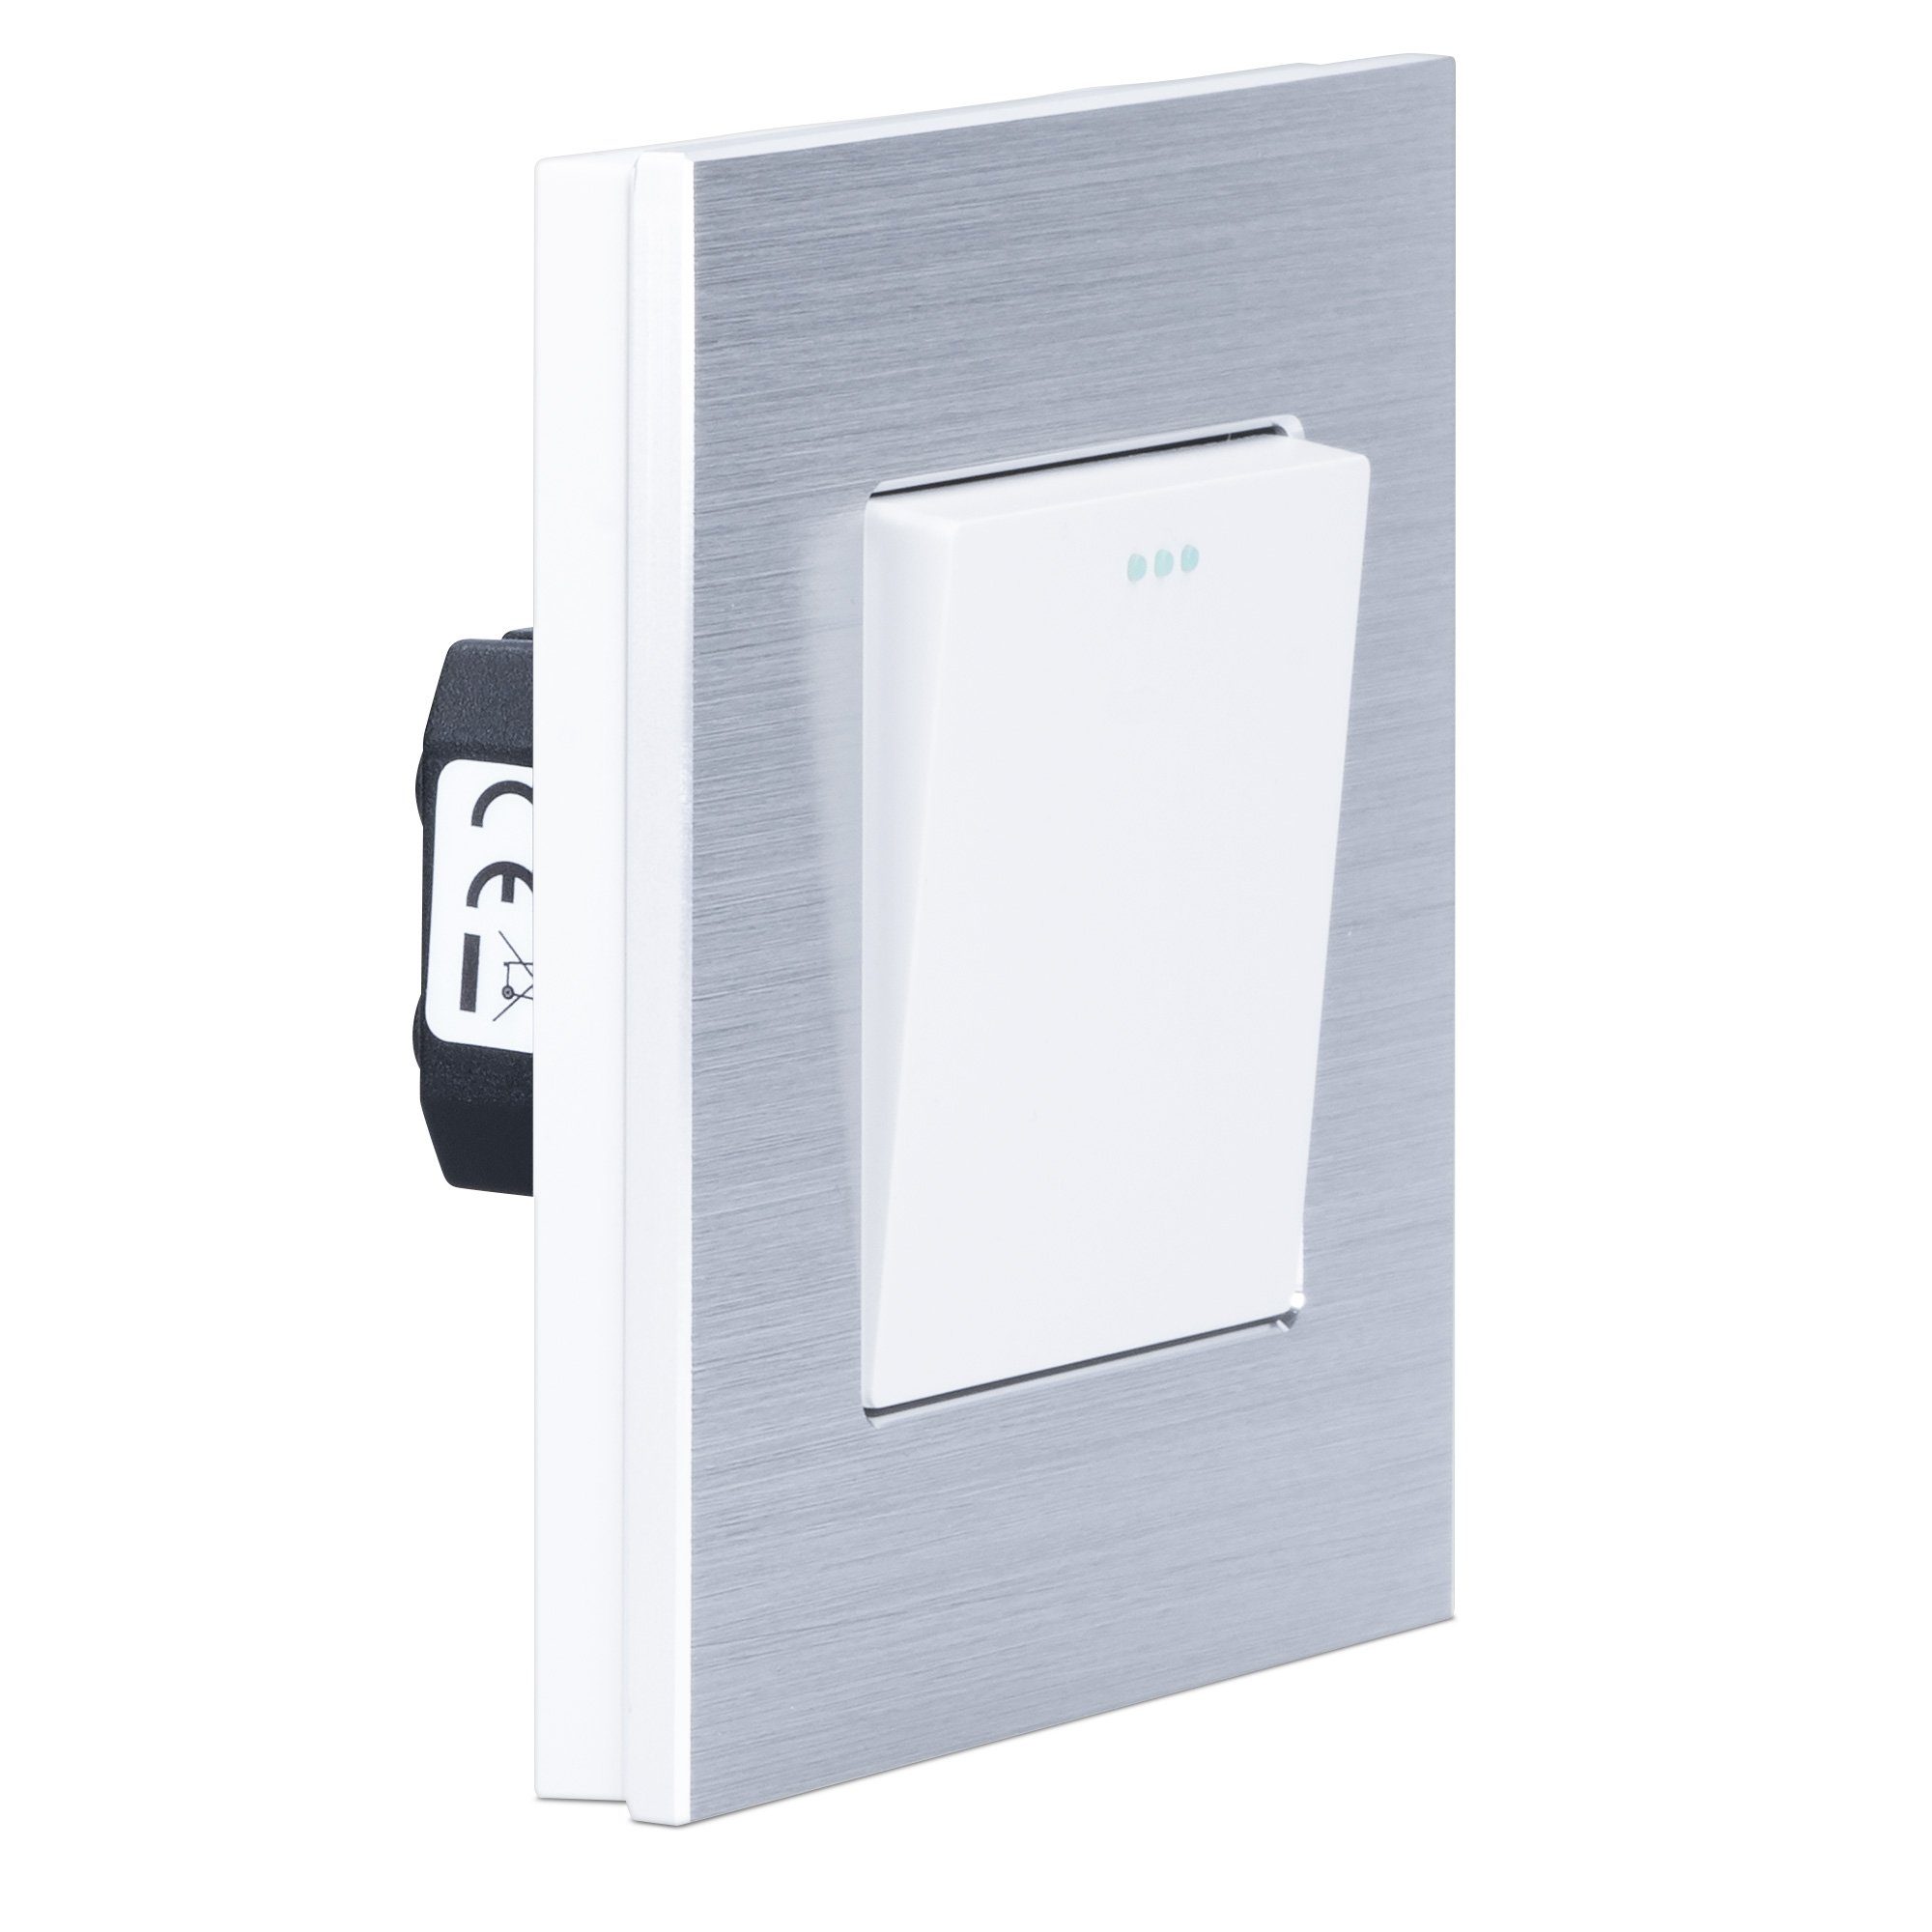 Navaris Lichtschalter, Design Schalter aus Aluminium - Schalter mit Rahmen  aus Aluminium - Einbauschalter - Aufputz Wandschalter online kaufen | OTTO